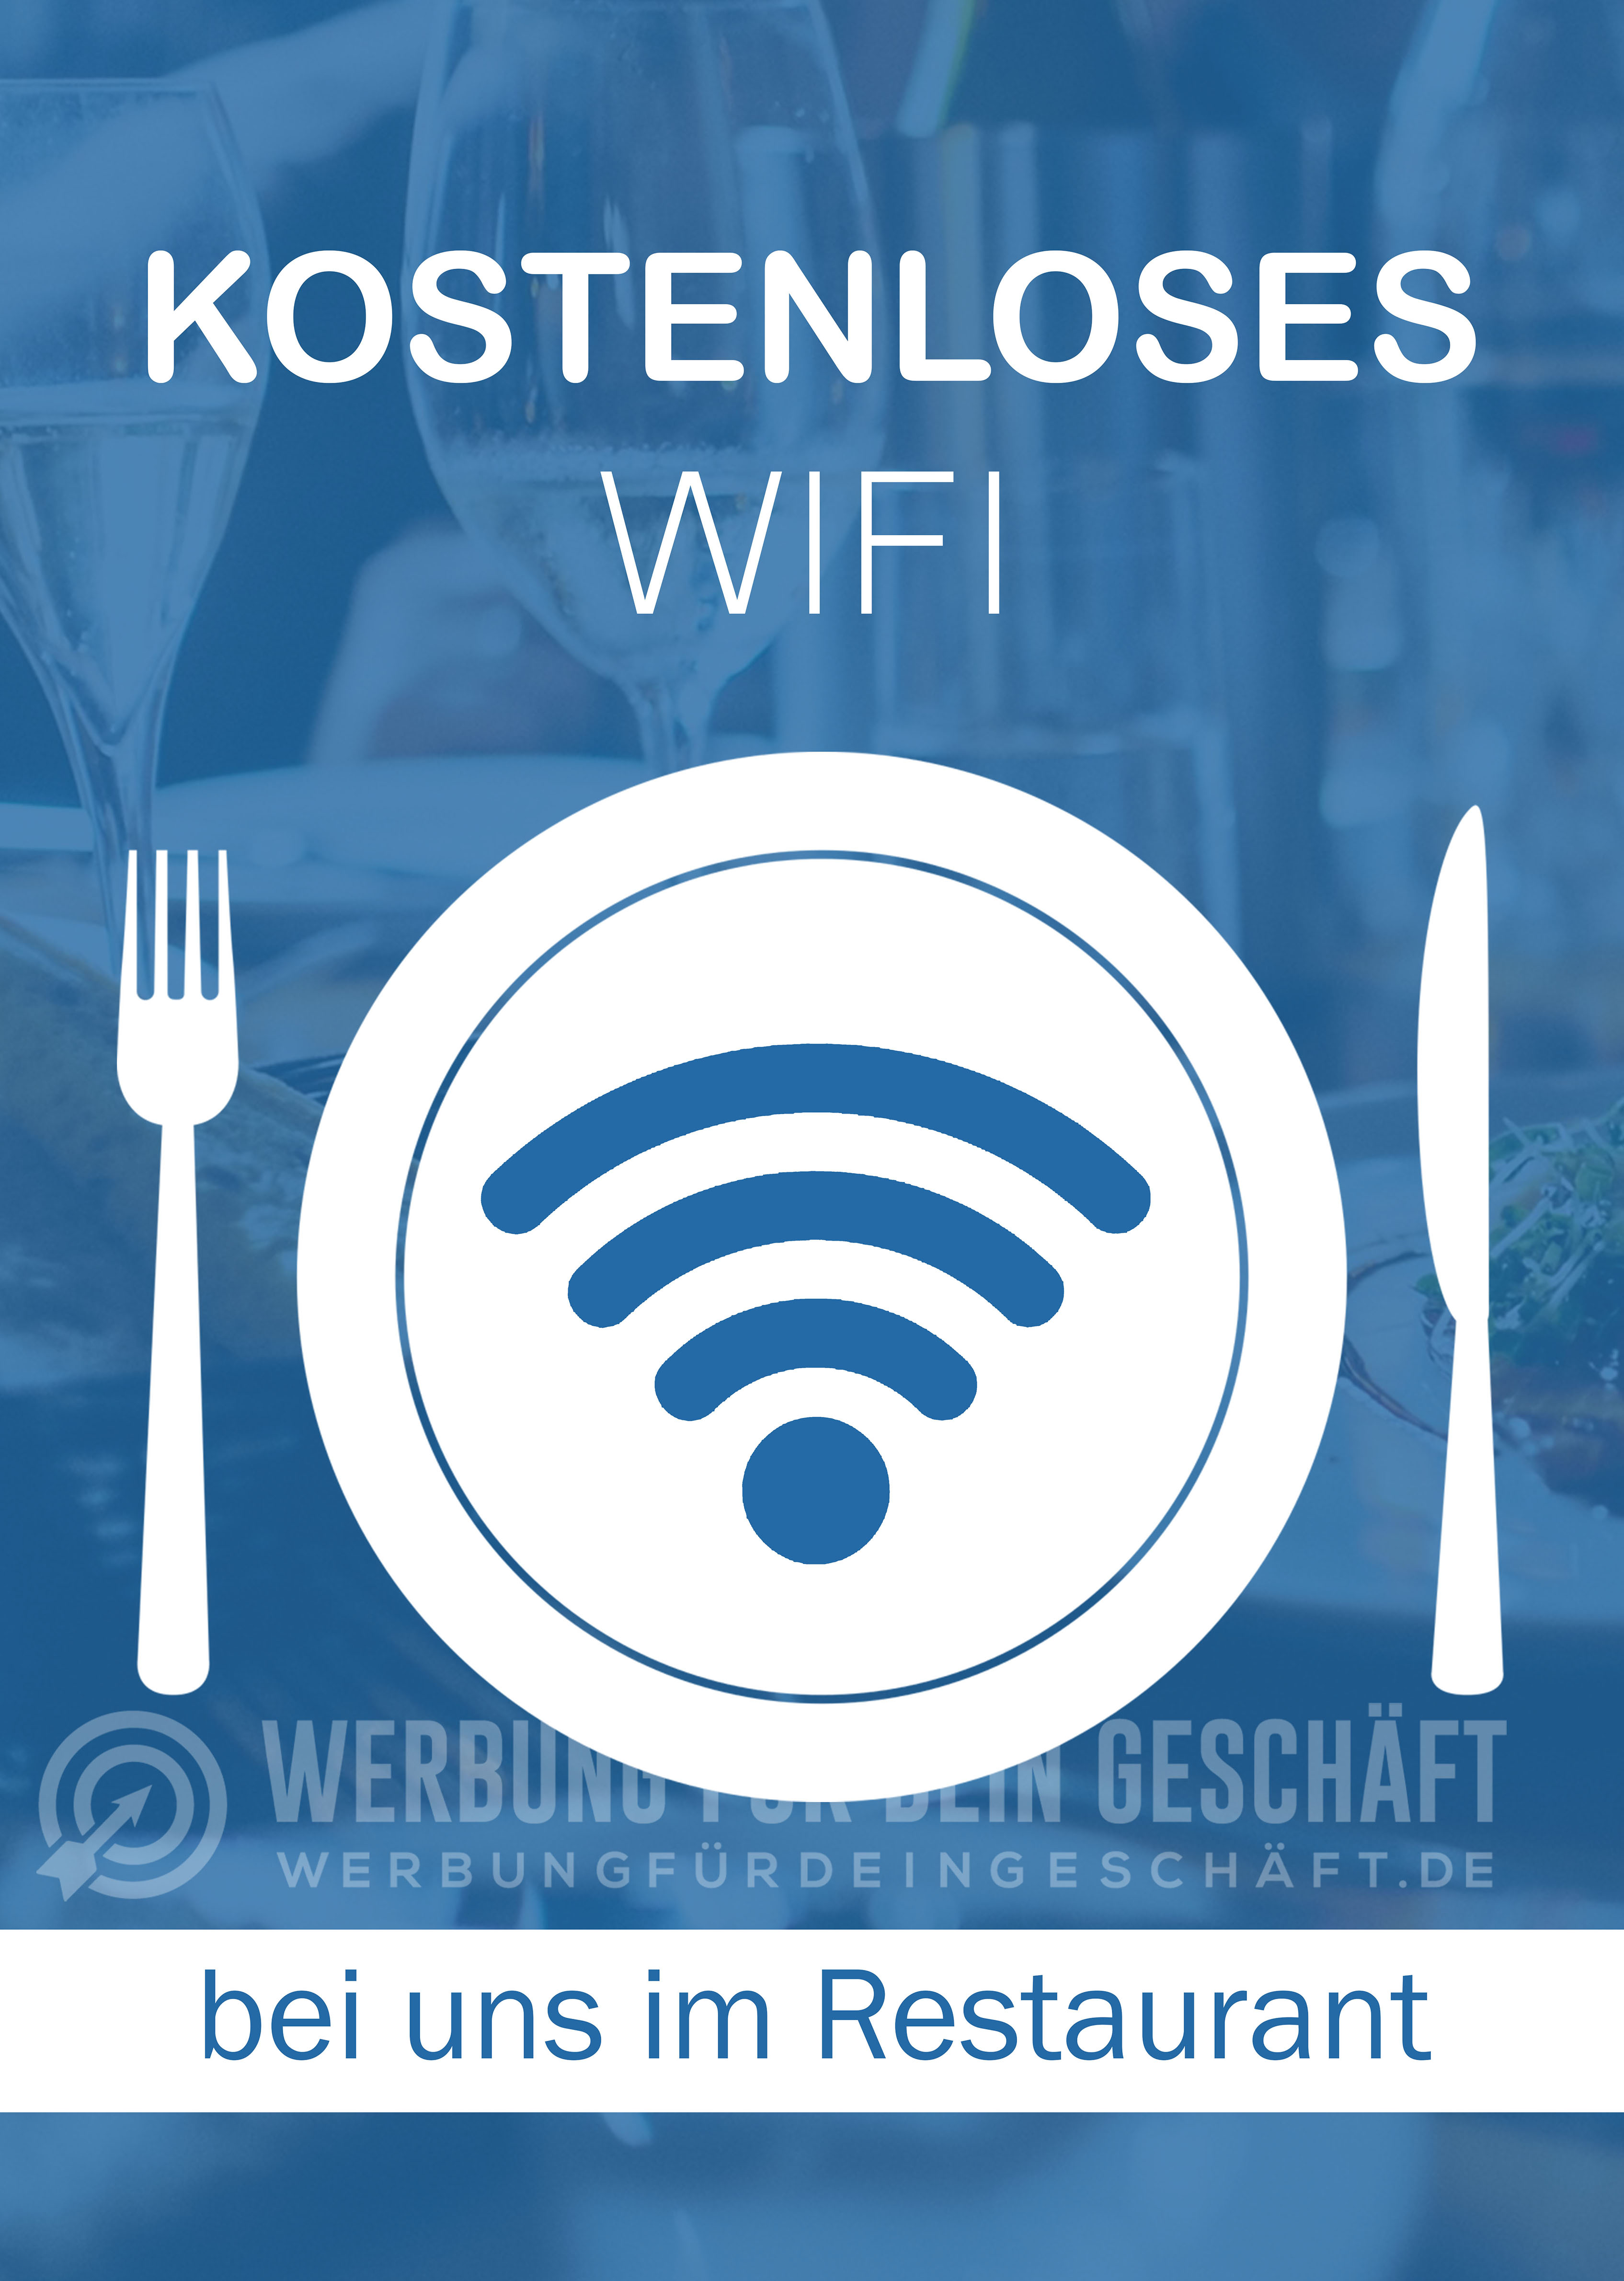 Kostenloses WIFI Poster | Werbeposter für Restaurant